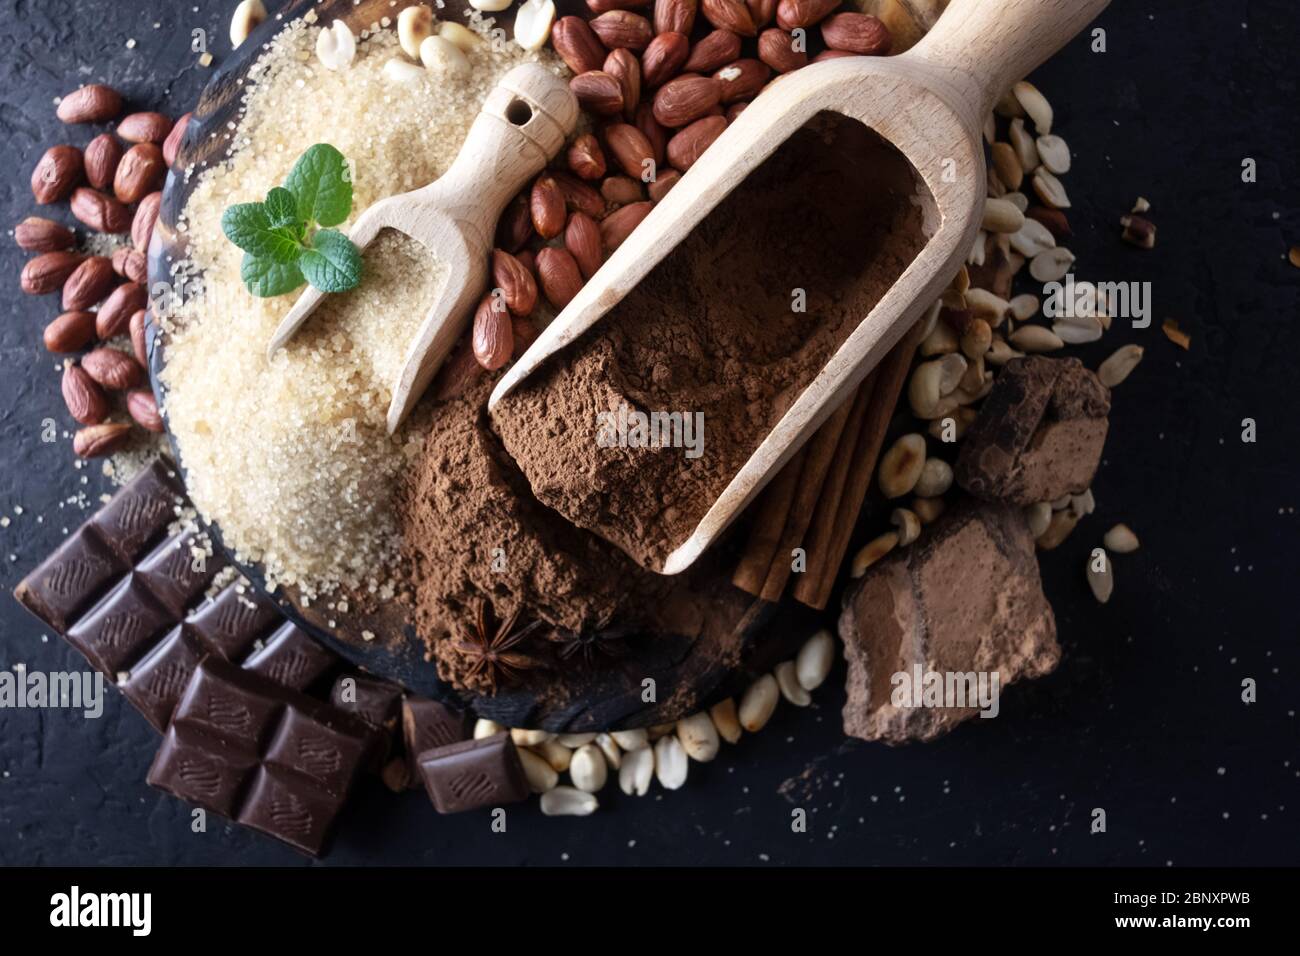 La polvere di cacao, cioccolato, noci e spezie su di un tavolo di legno. Fotografia di cibo Foto Stock